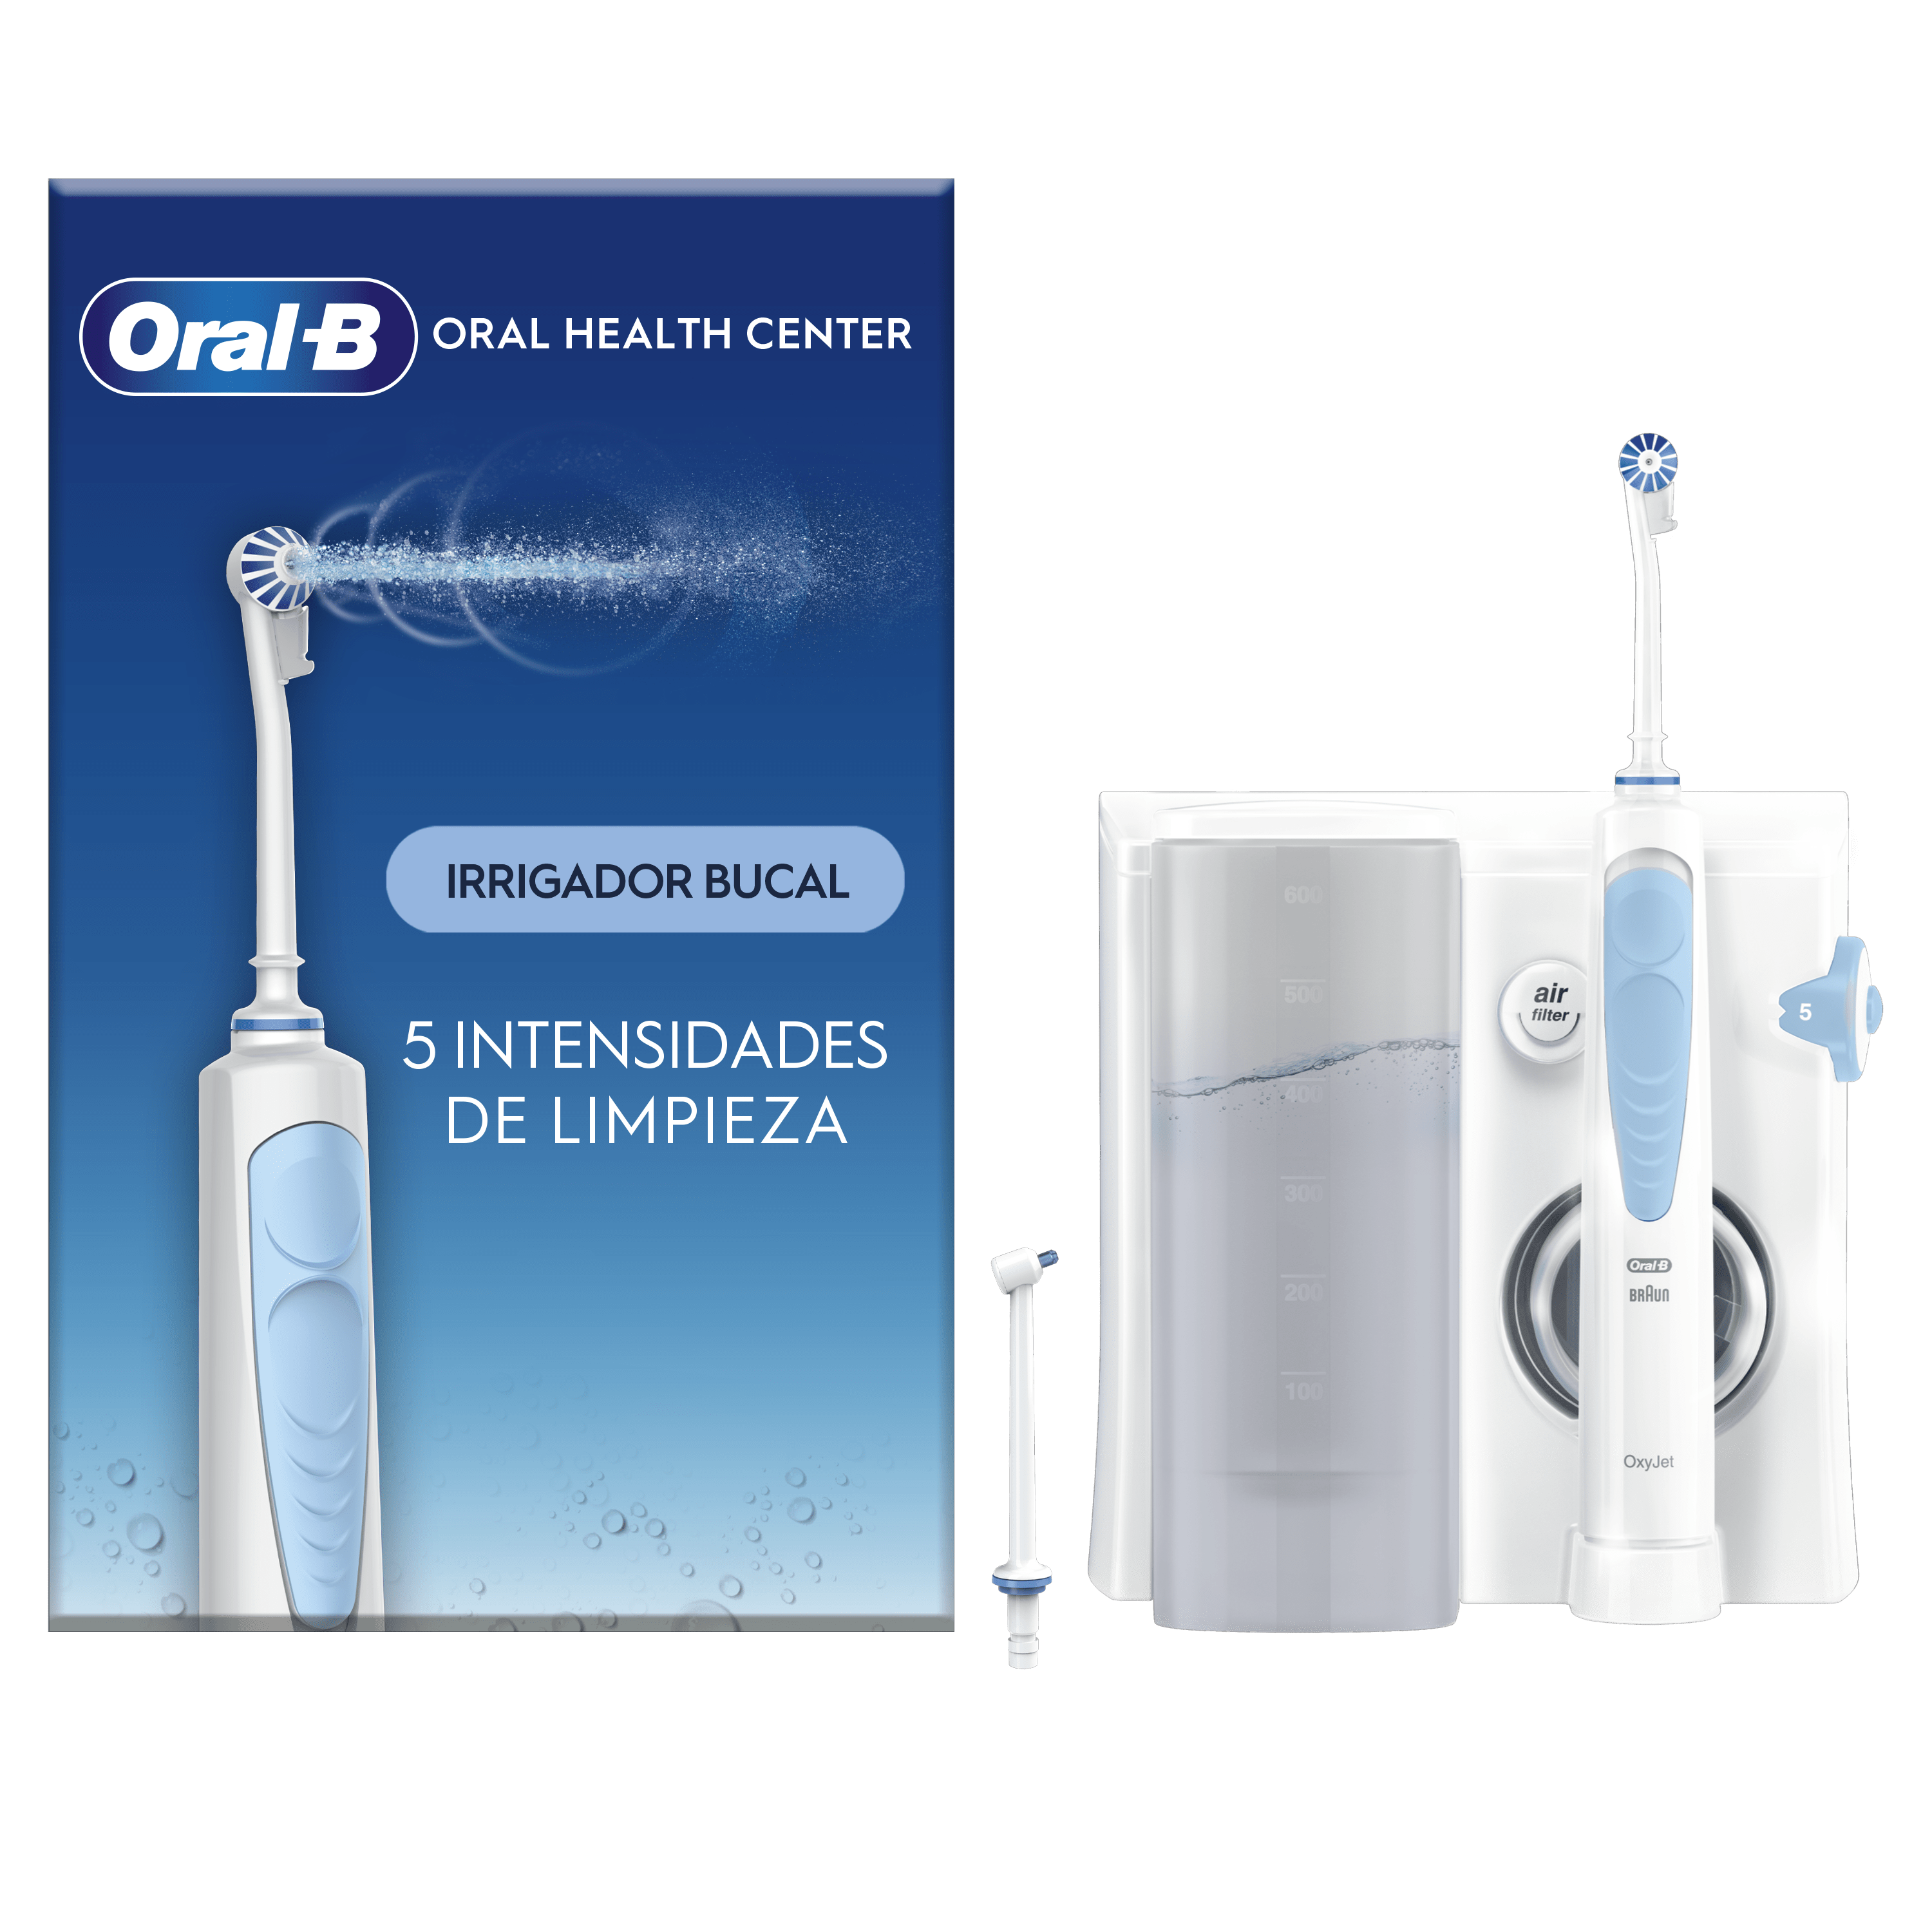 Oral B Limpieza Profesional 1 - Cepillo Eléctrico Avanzado para